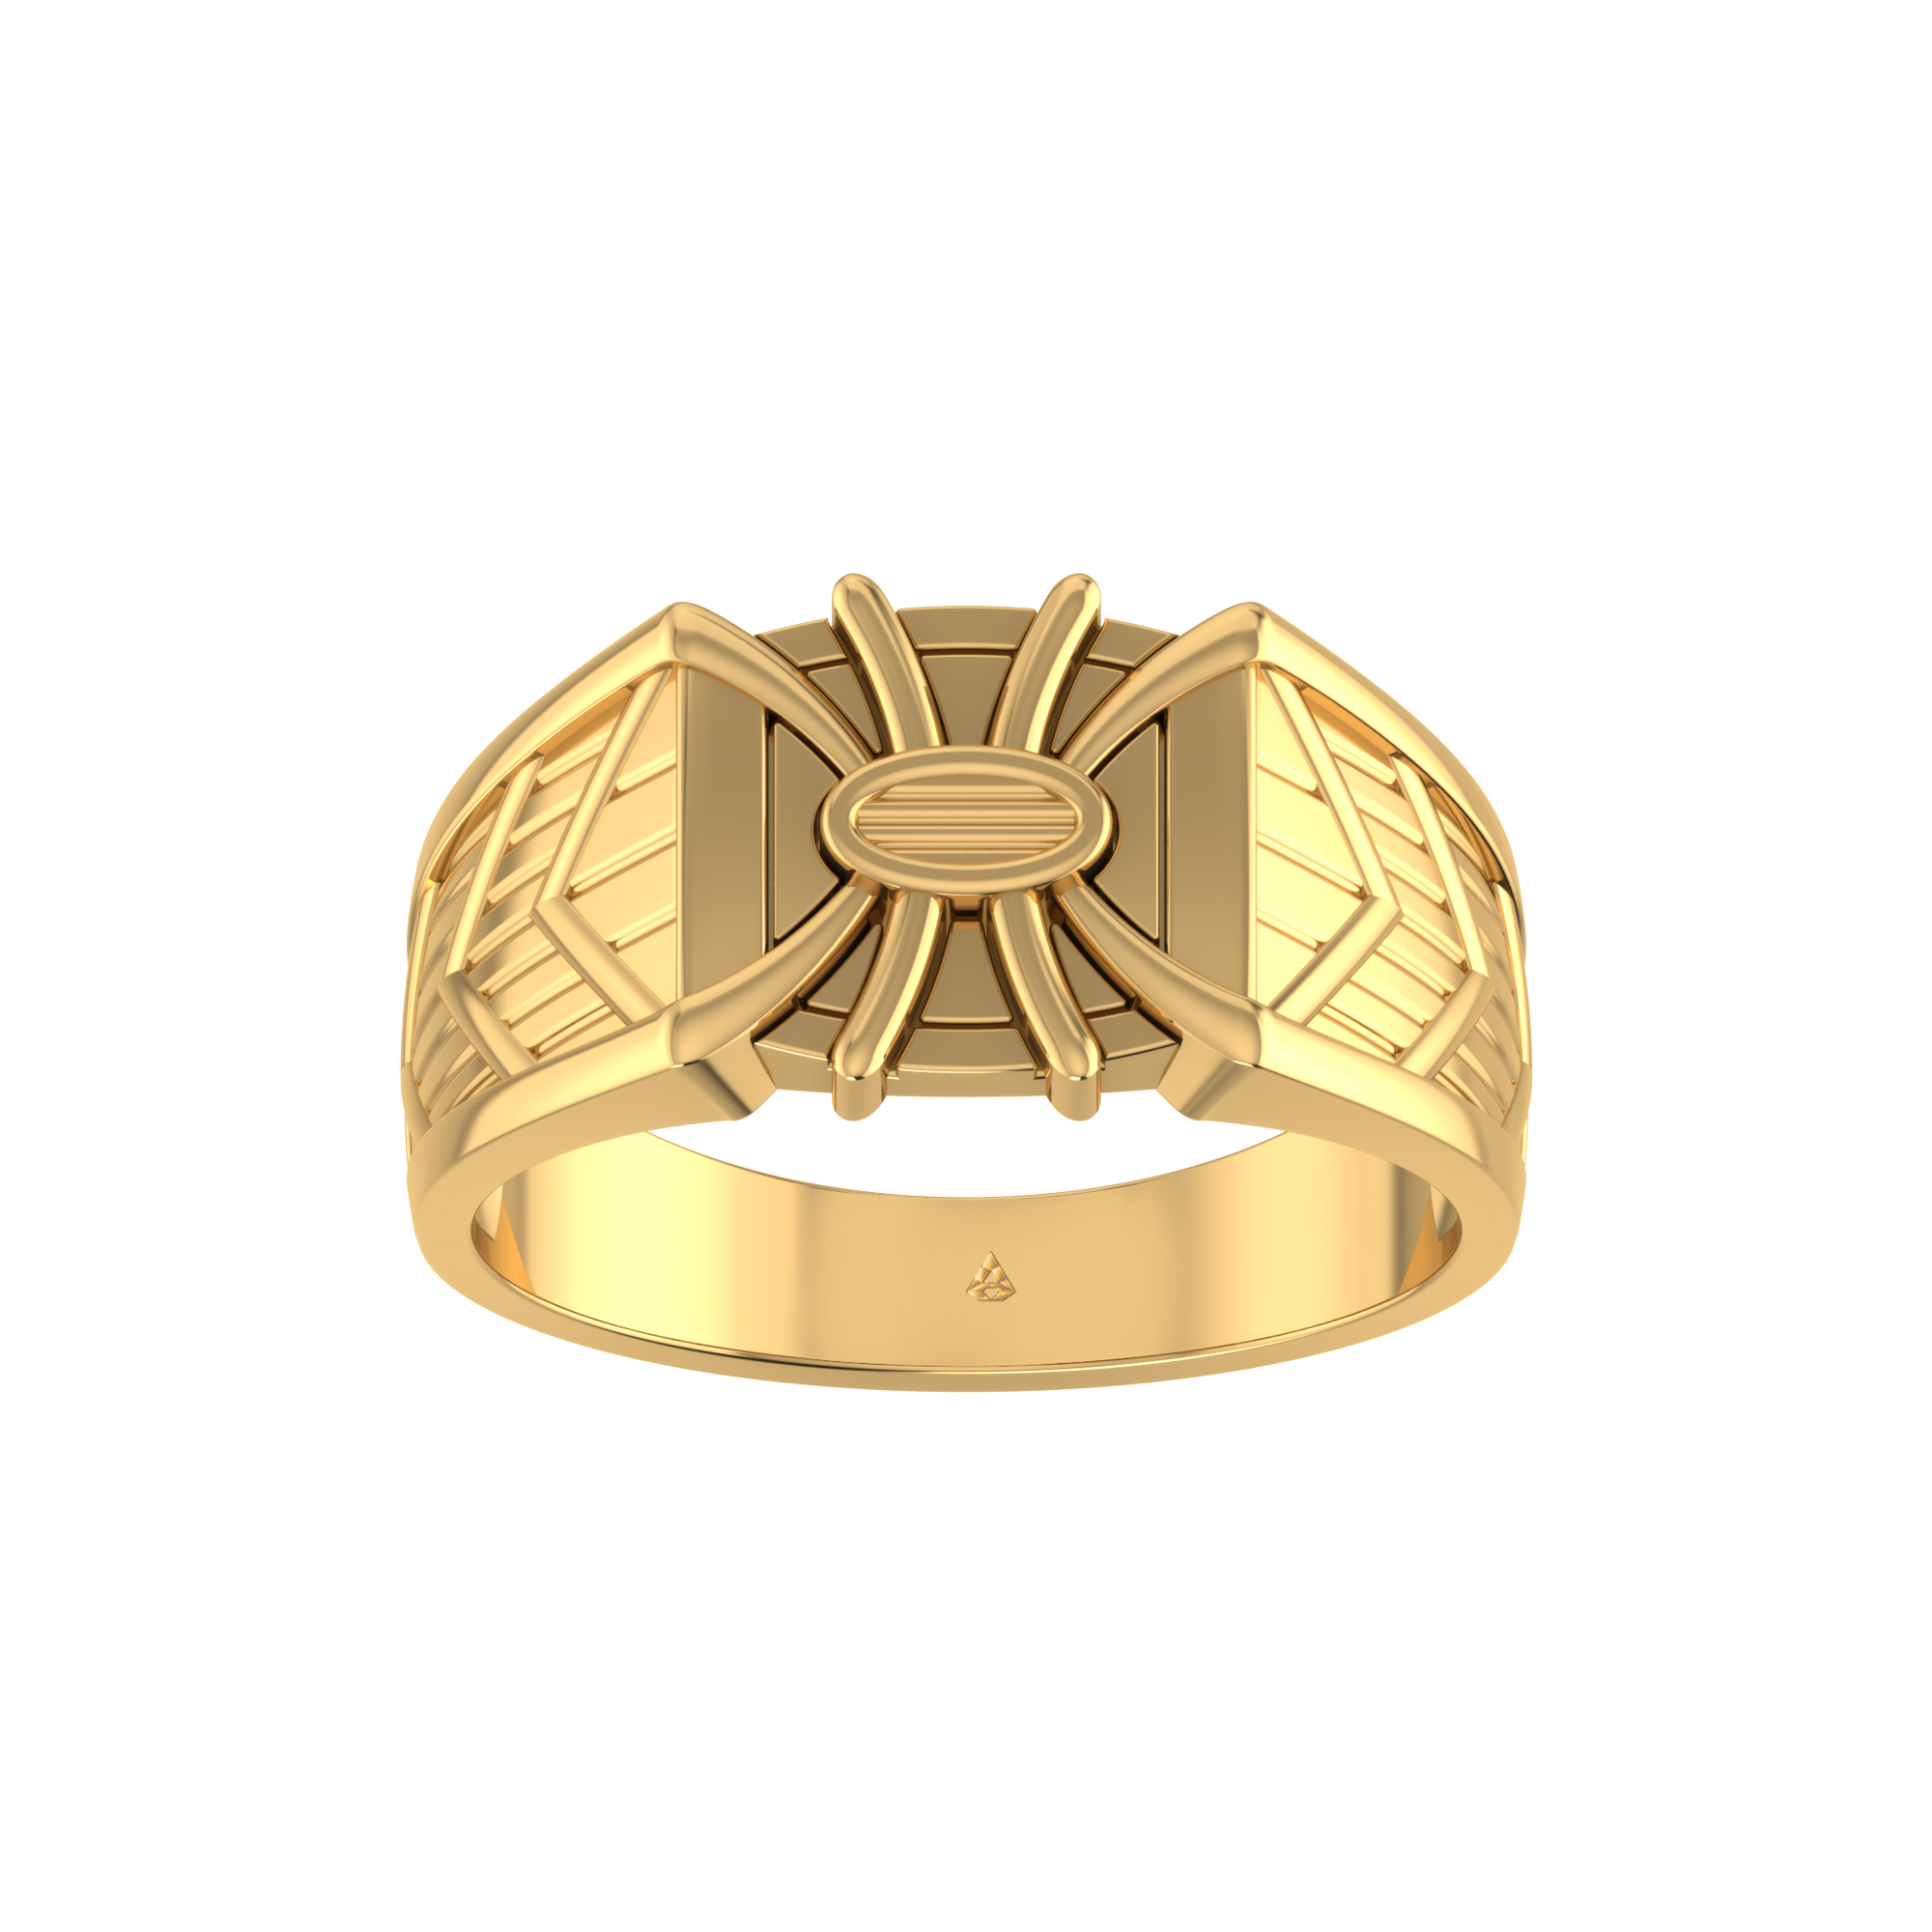 Homxi Custom Wedding Rings for Men Stainless Steel Wedding Rings Men,Round  6mm Mens Rings Gold Mens Ring Size 6|Amazon.com